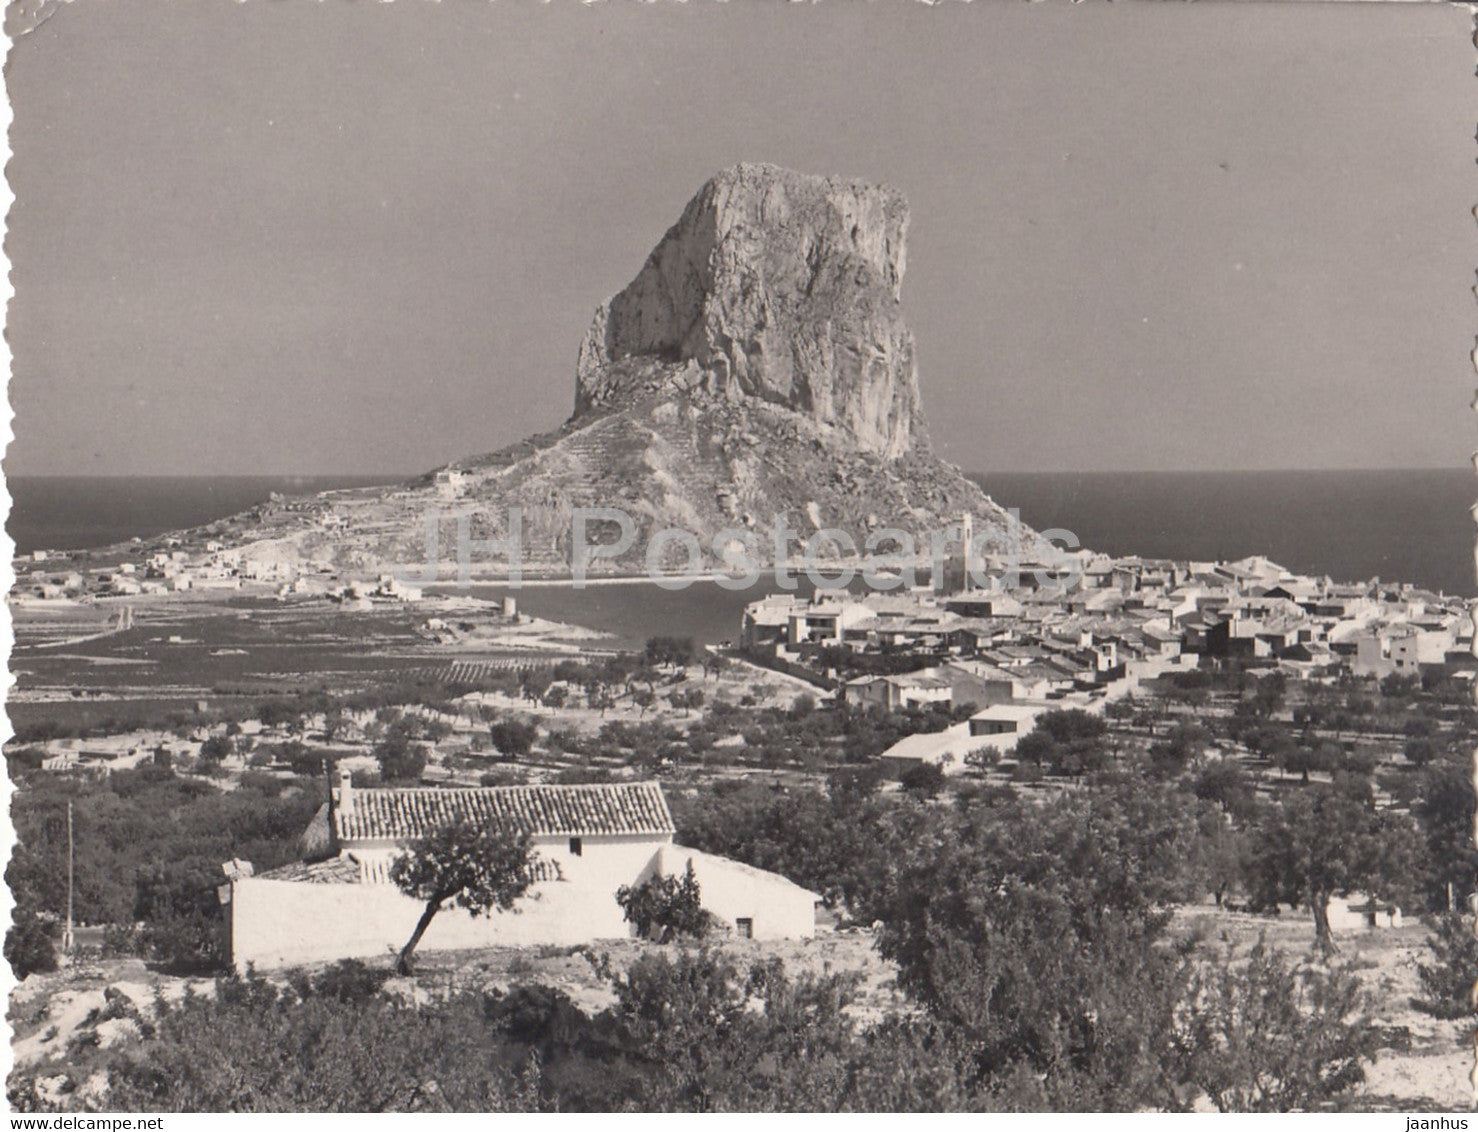 Calpe - El Penon de lfach y el pueblo - Ifach Rock and the Village - old postcard - 1958 - Spain - used - JH Postcards